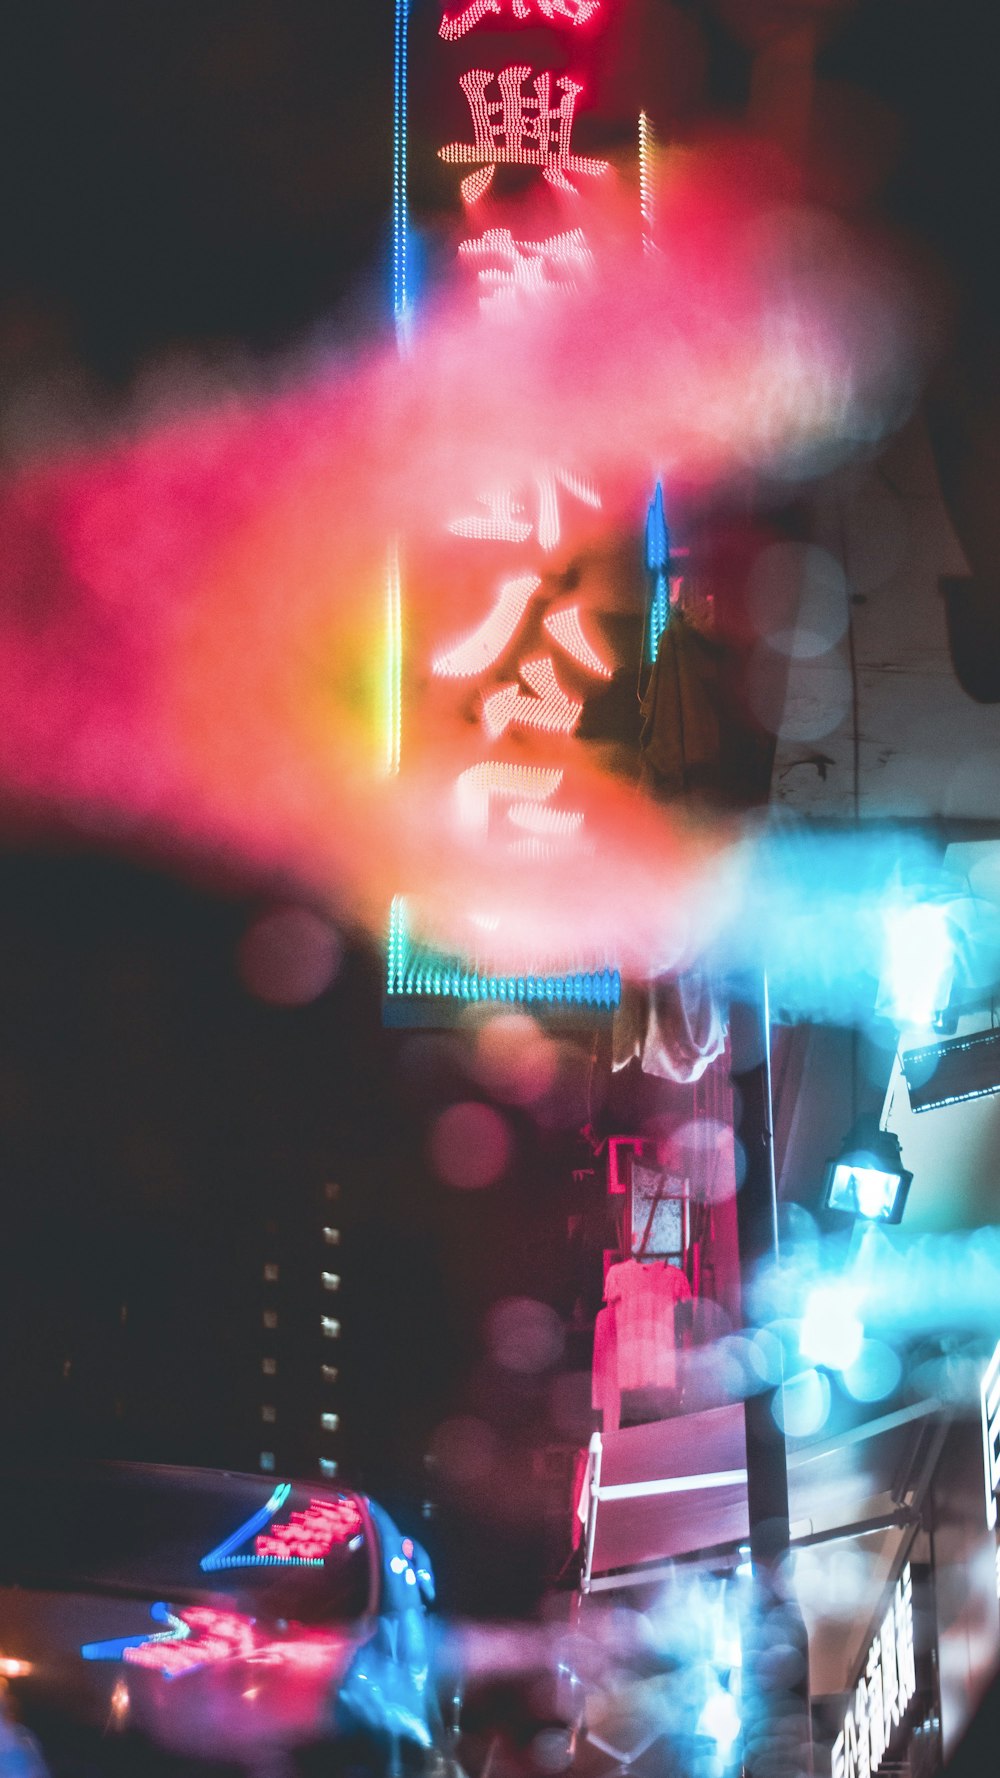 Une photo floue d’une enseigne au néon dans le noir